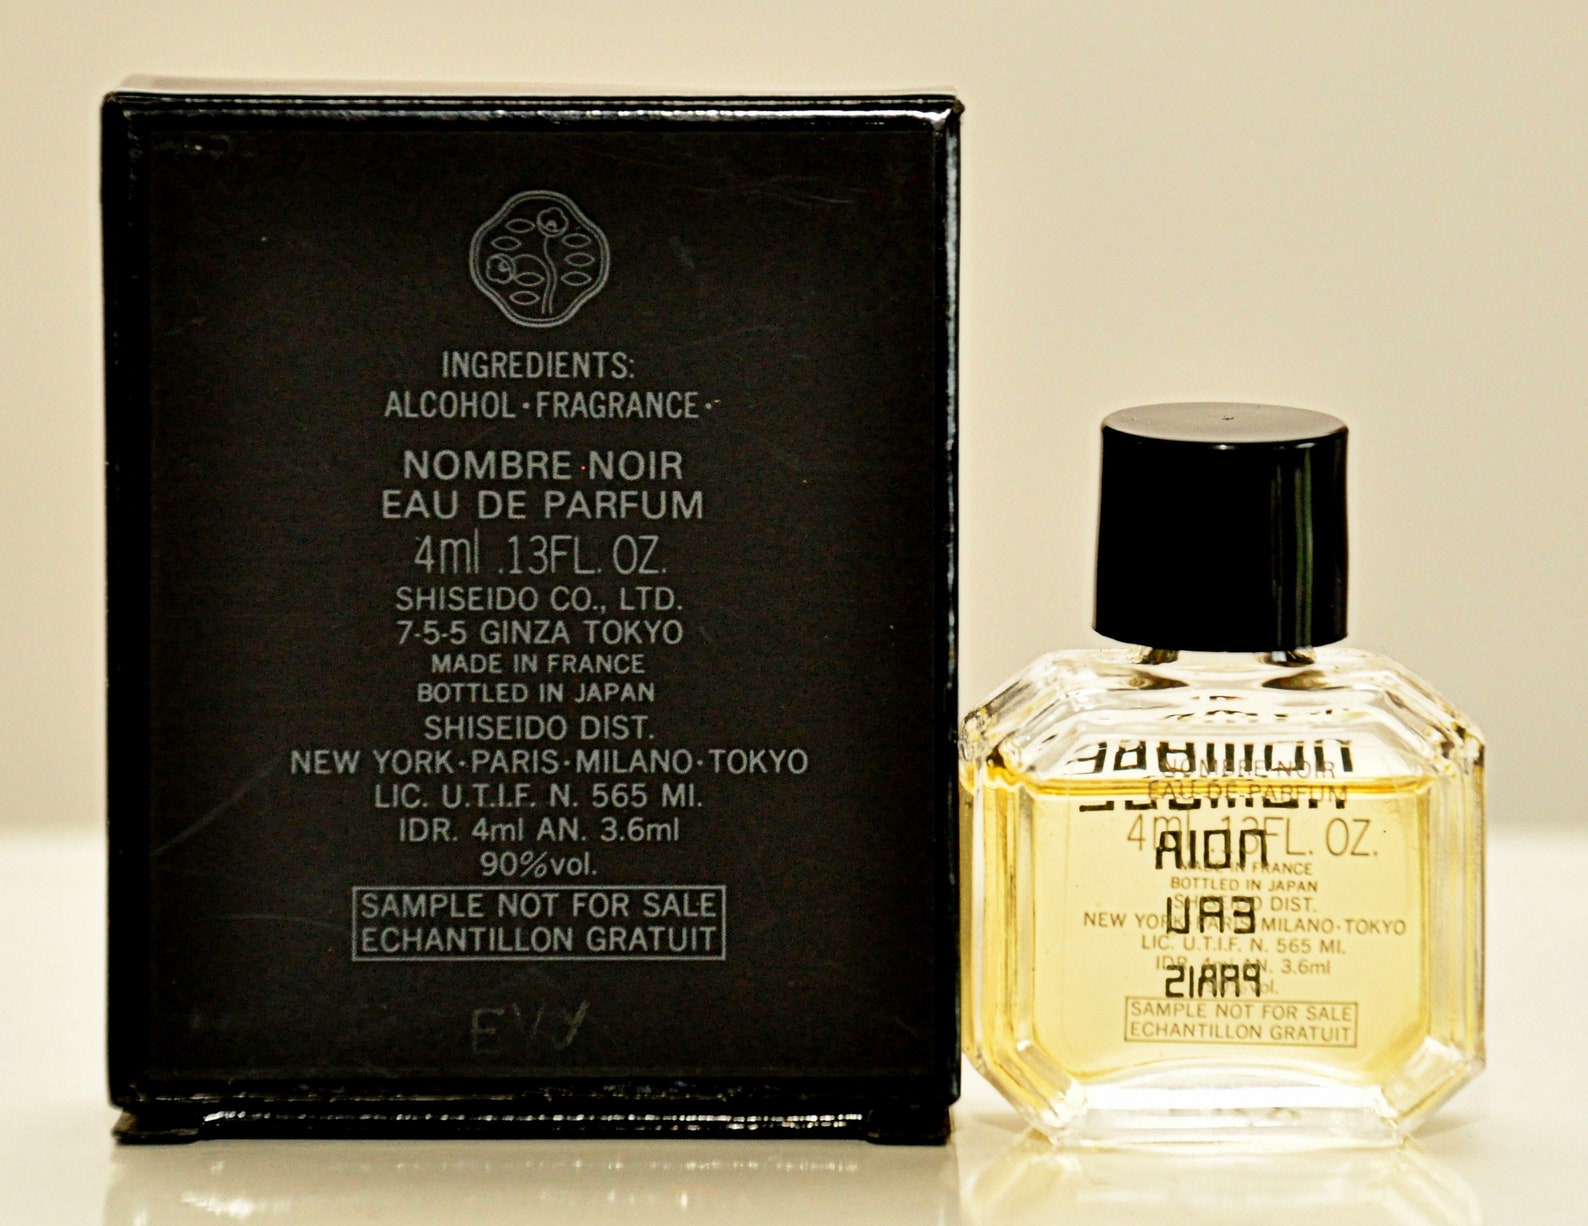 Shiseido Nombre Noir Eau De Parfum Edp 4ml 013 Fl. Oz. - Etsy